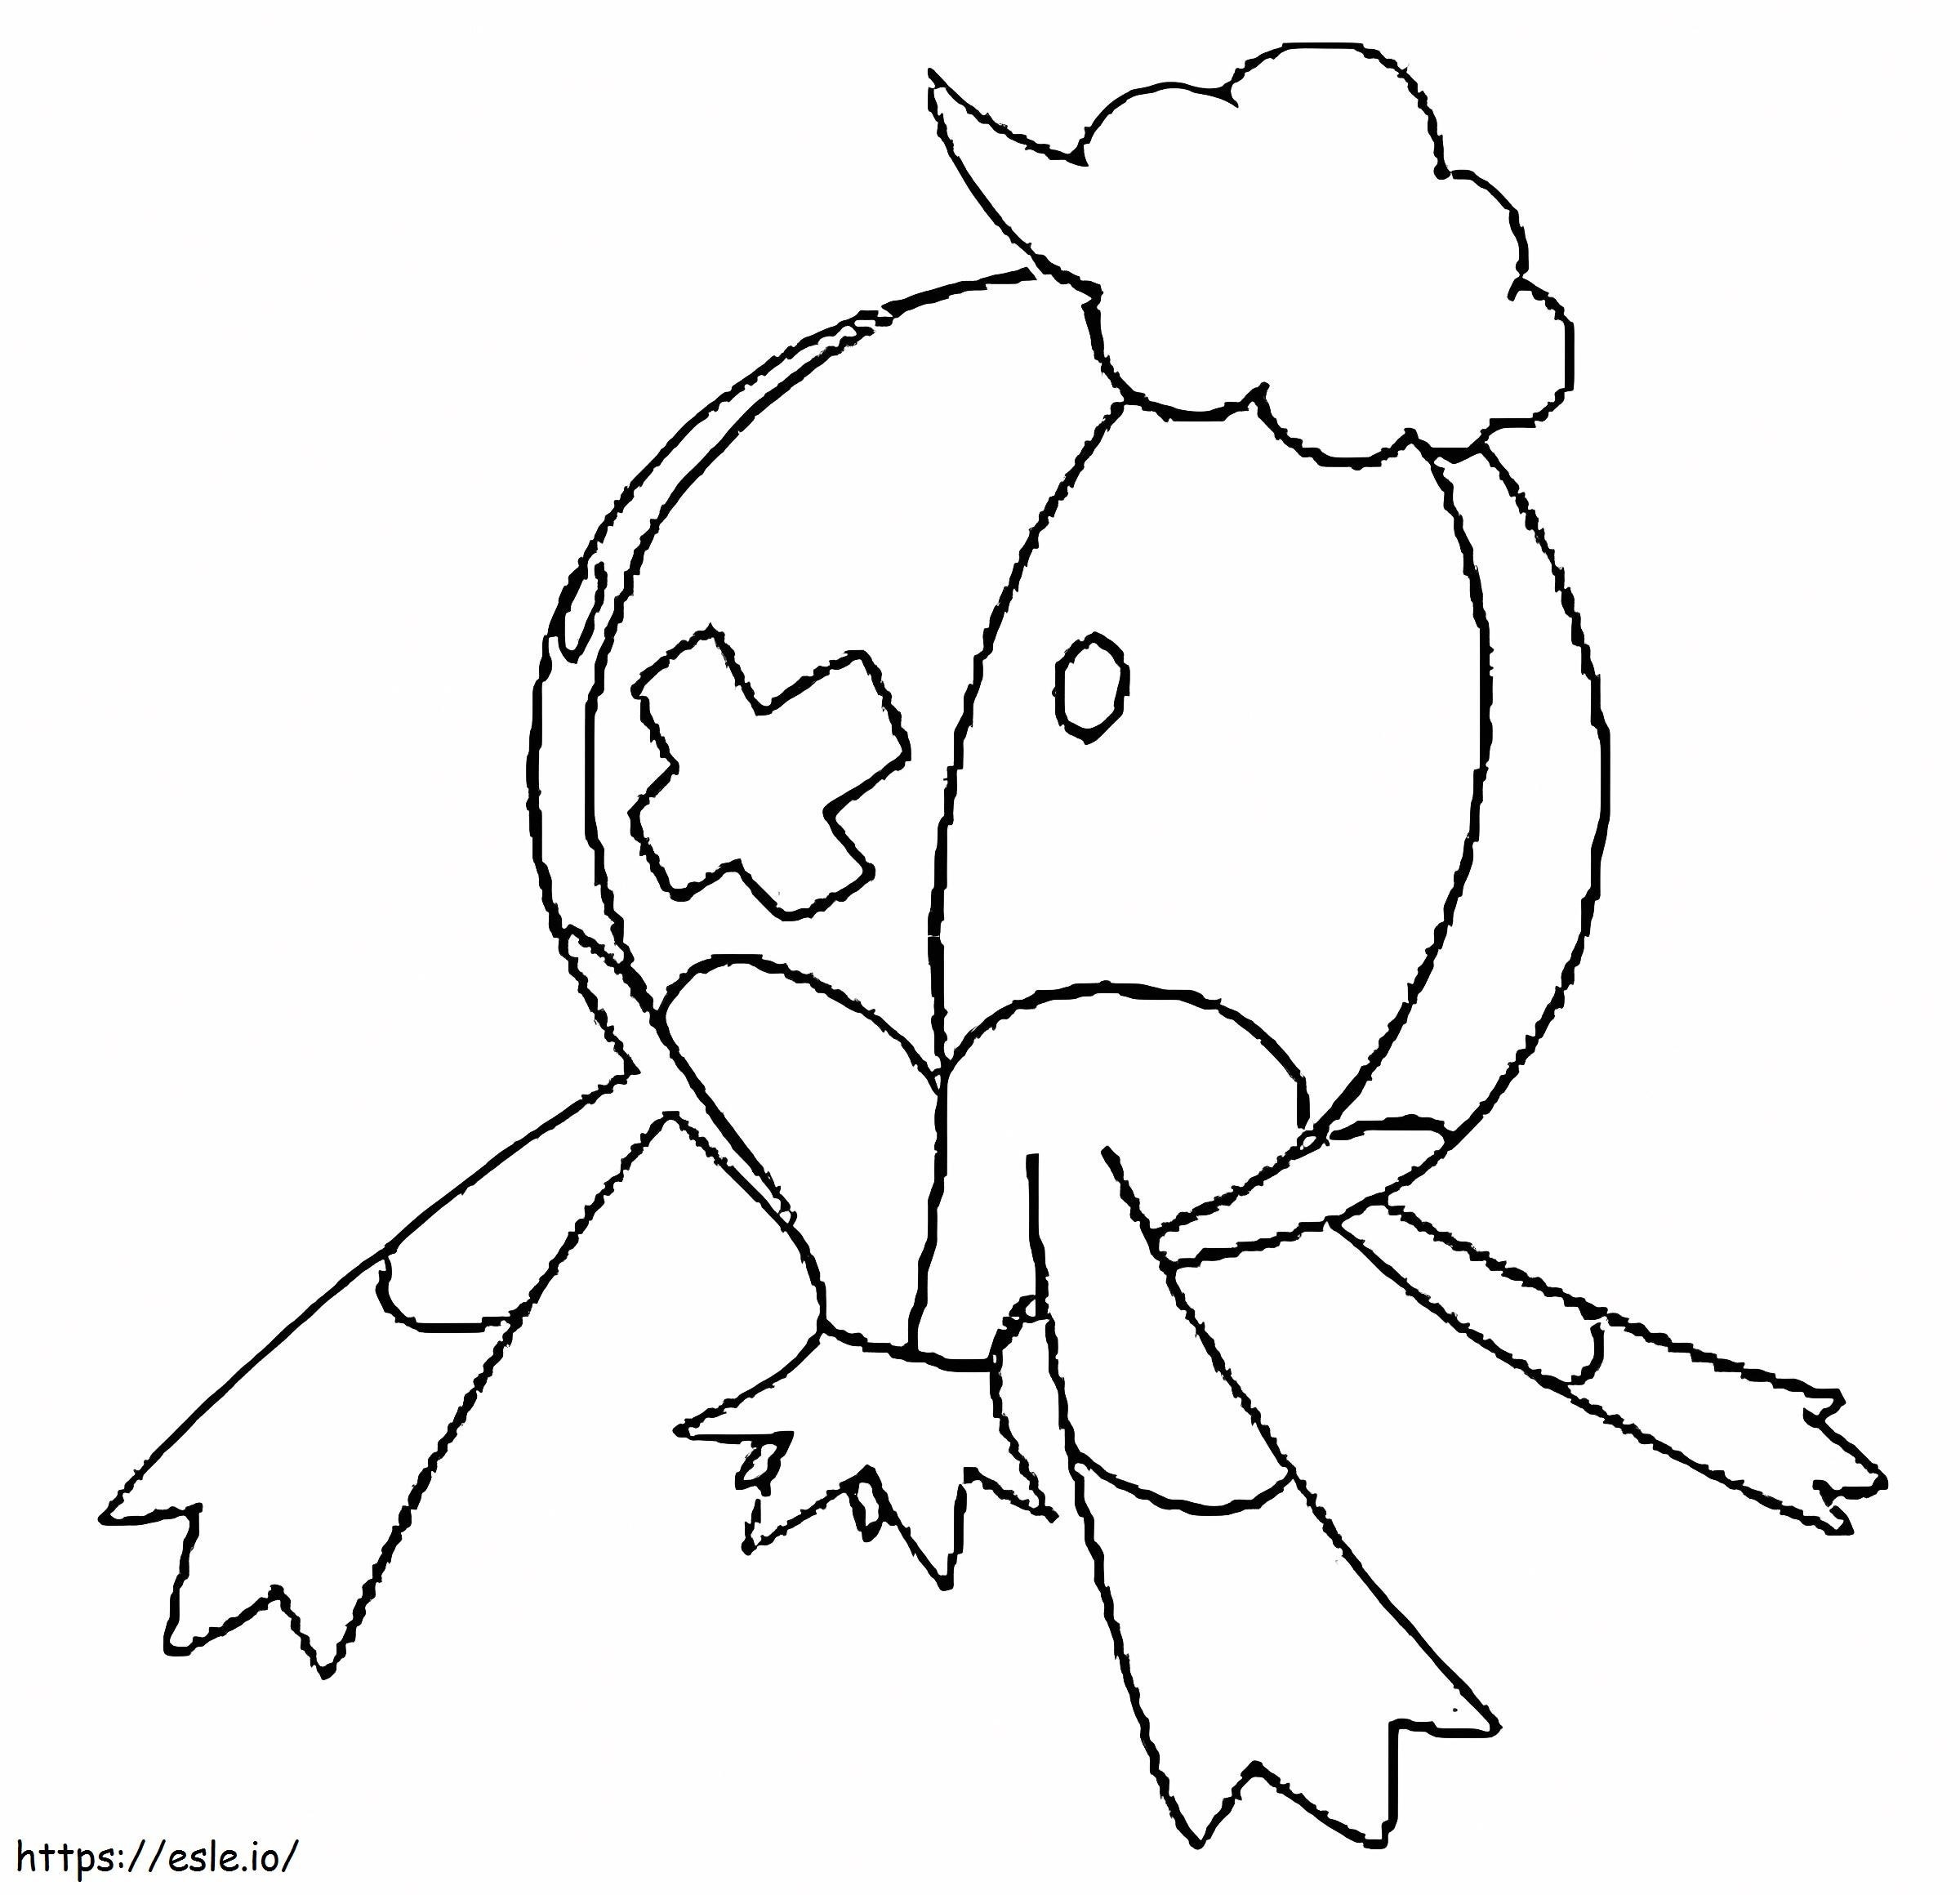 Coloriage Pokémon Drifblim Gen 4 à imprimer dessin